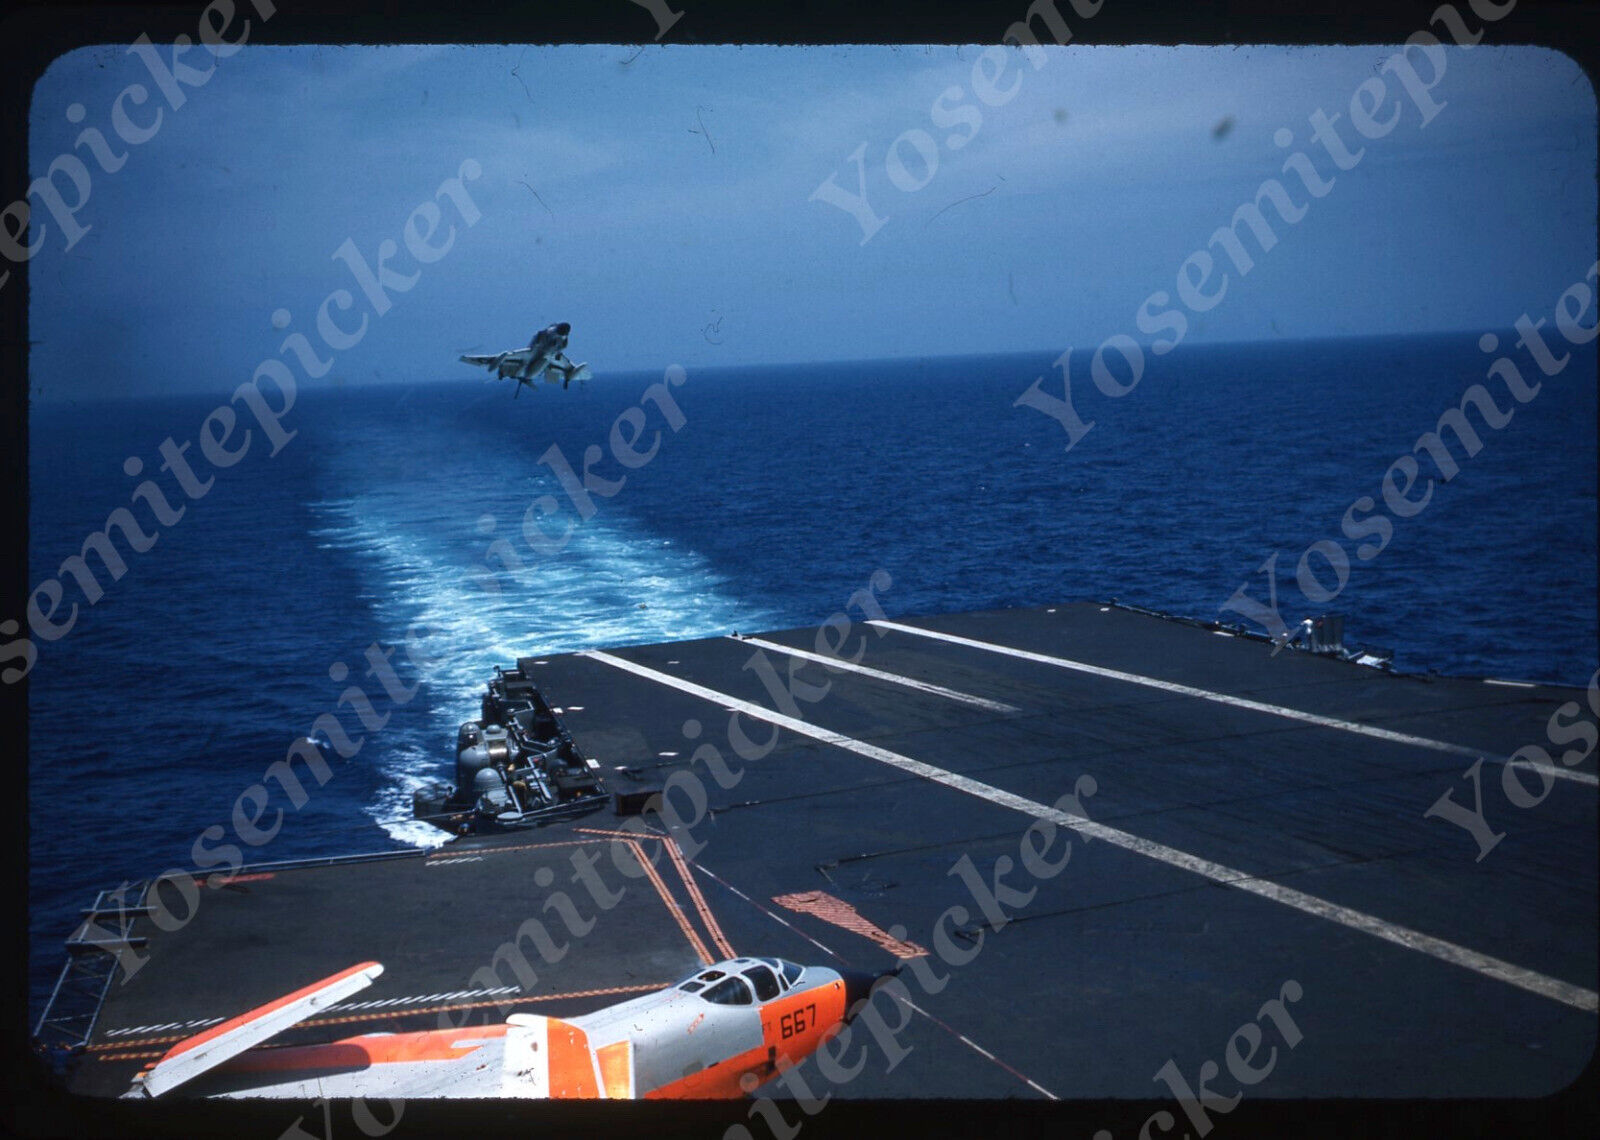 sl87 Original Slide 1960's Military jet landing on carrier ship deck 087a